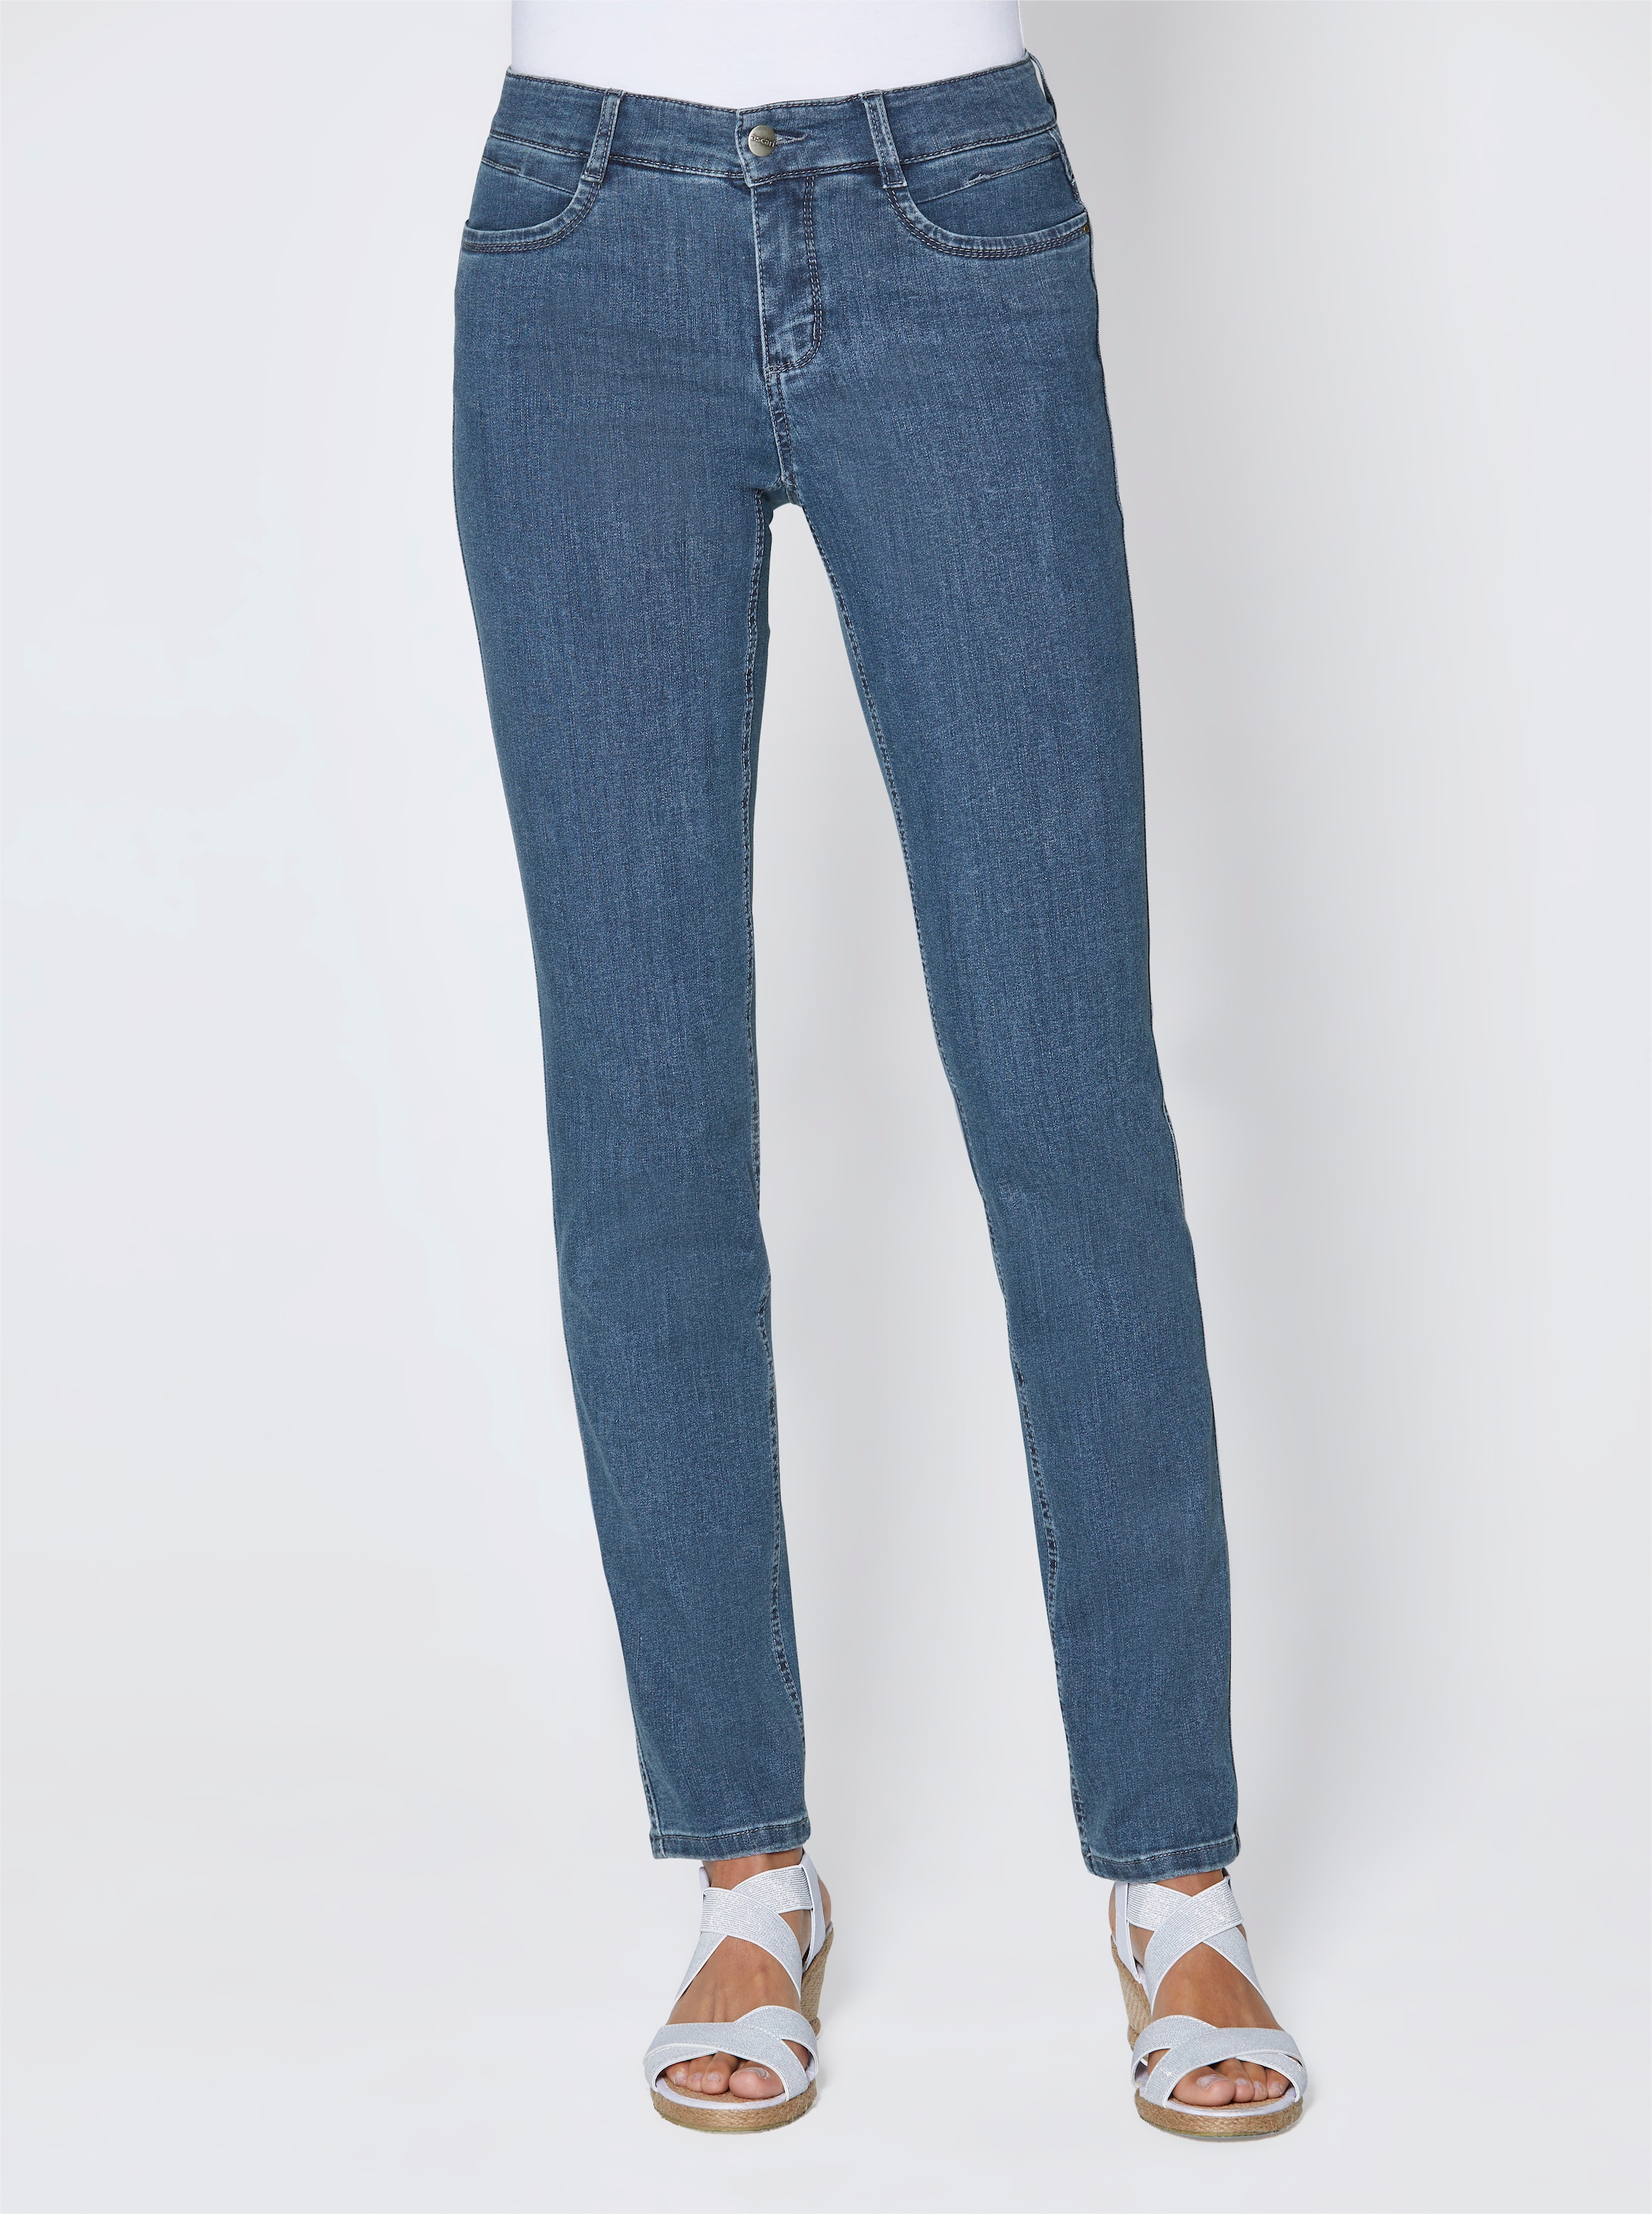 x201E;Unser günstig Kaufen-Stretch-Jeans in jeansblau von Ascari. Stretch-Jeans in jeansblau von Ascari <![CDATA[Perfekt zur aktuellen Mode! Edel-Jeans in schmaler Röhrenform. Sitzt super und ist herrlich bequem dank der bi-elastischen Superstretch-Qualität. Unser Tipp: Für eine